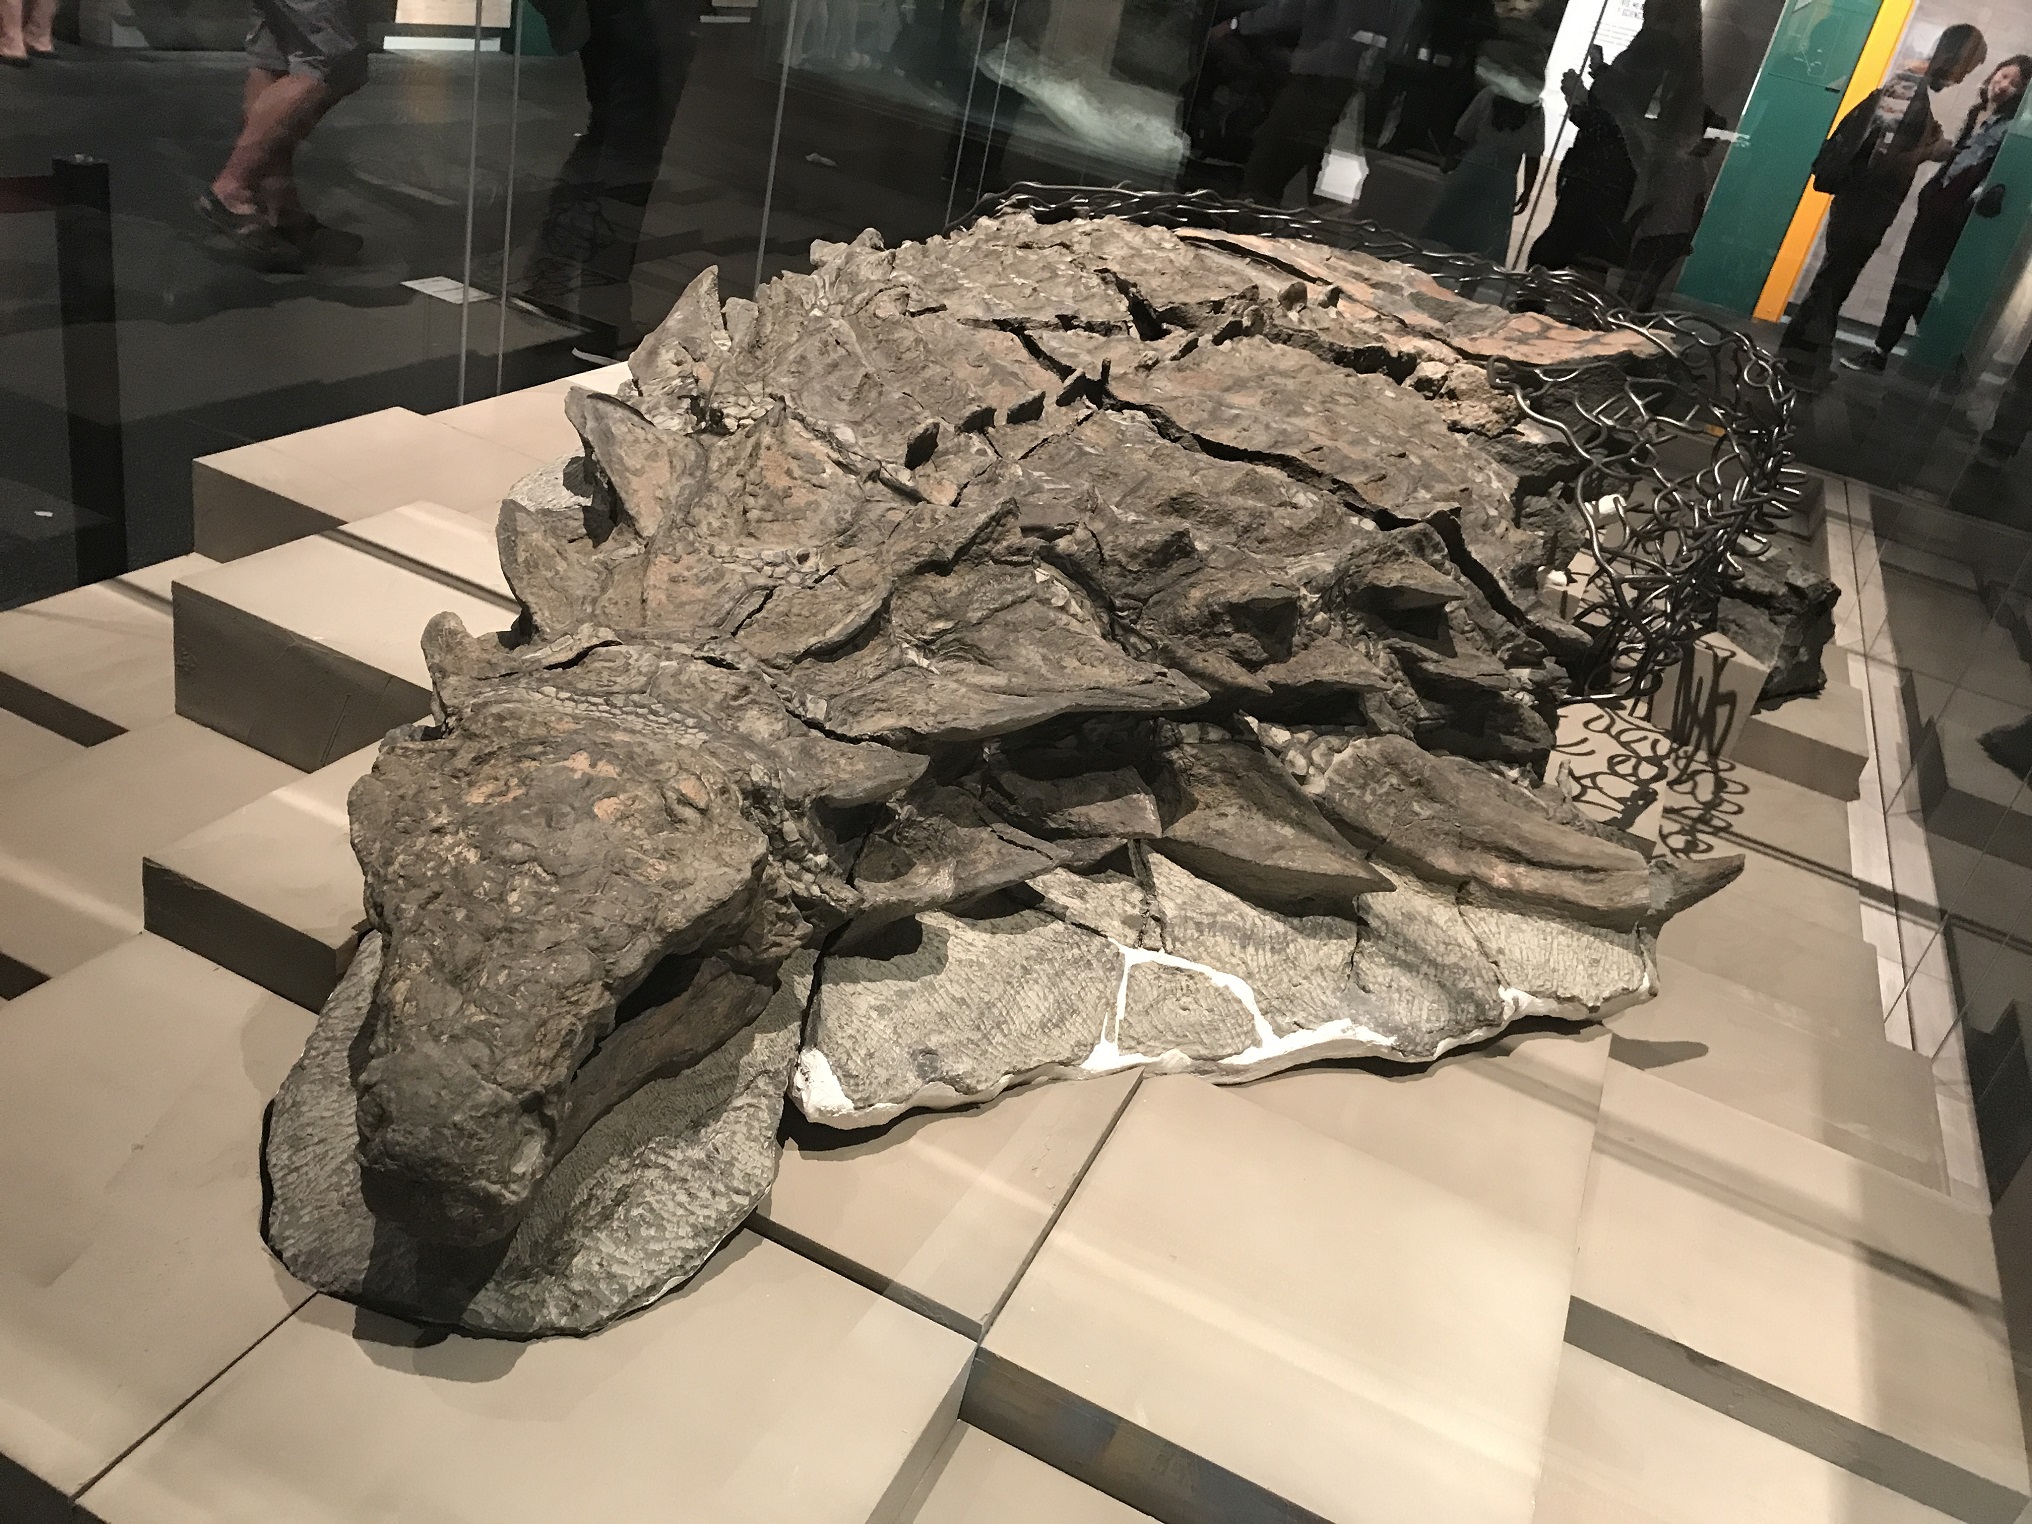 Fantasticky dochovaná fosilie nodosauridního ankylosaura na výstavě. Zaživa byl tento obrněný dinosaurus nejspíš rezatě zbarvený, měřil asi 5,4 metru na délku a vážil necelých 1,5 tuny. Kredit: Machairo, Wikipedie (CC BY-SA 4.0)